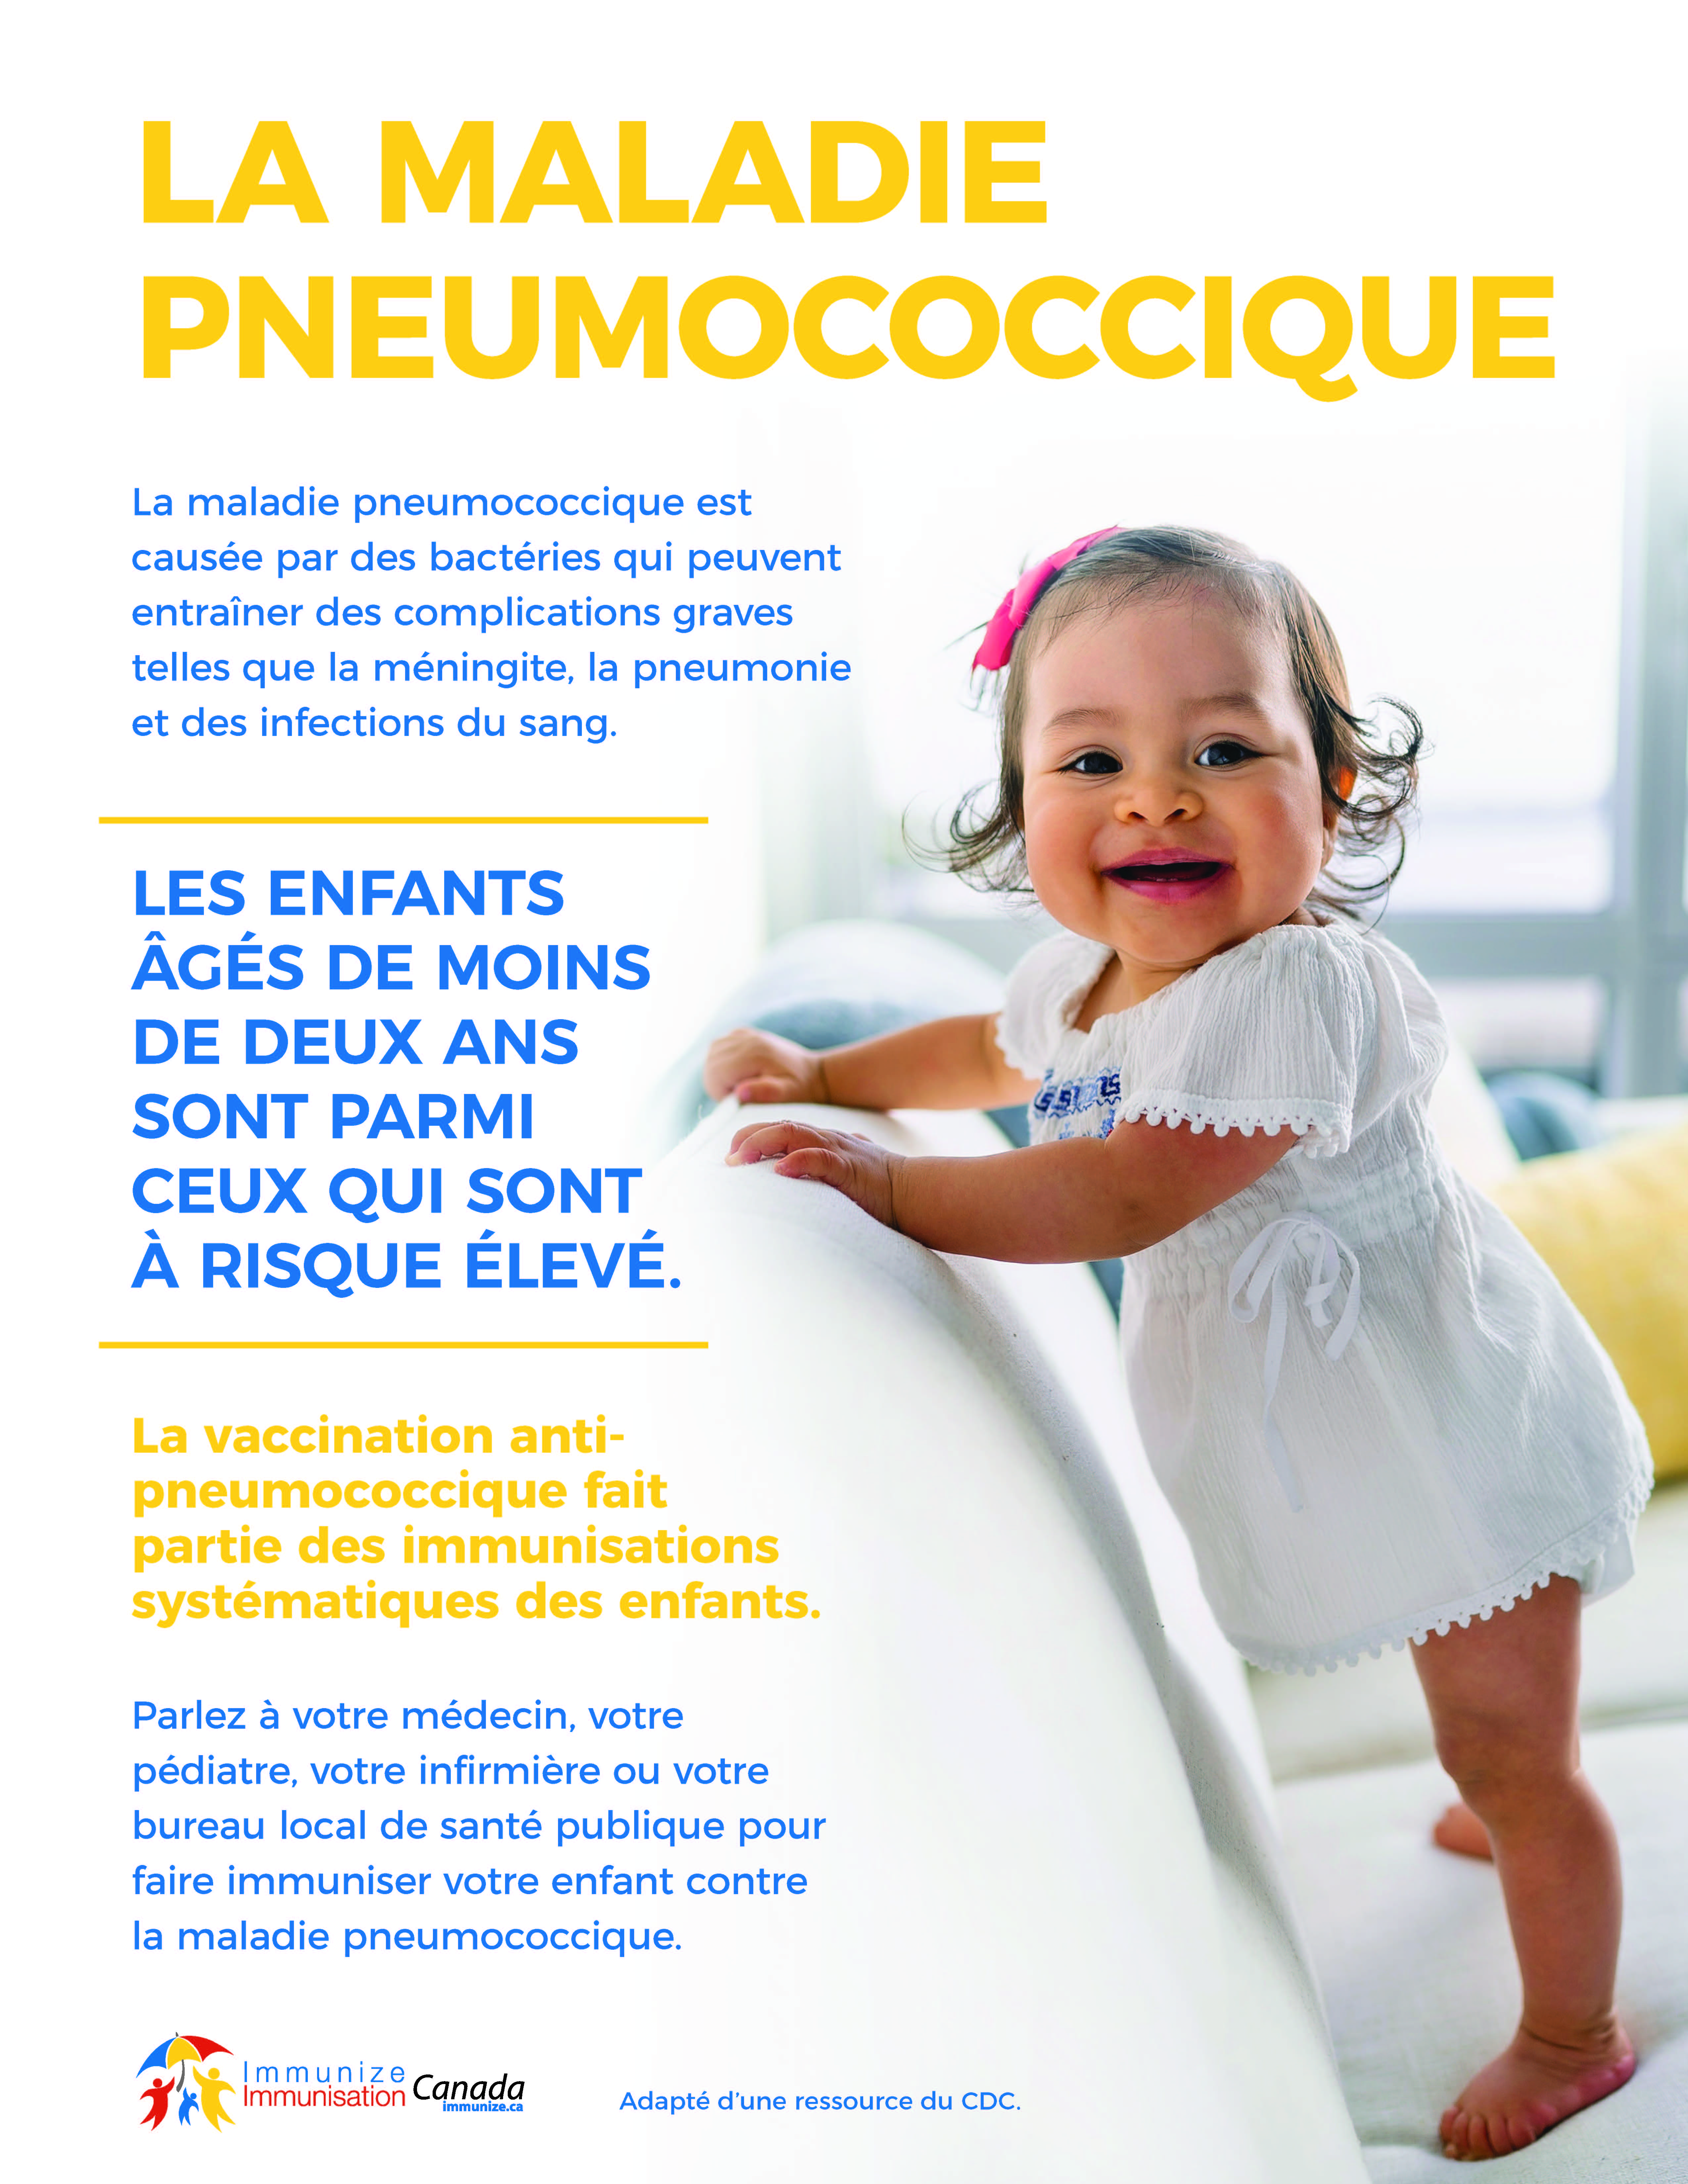 La maladie pneumococcique chez les enfants de moins de 2 ans